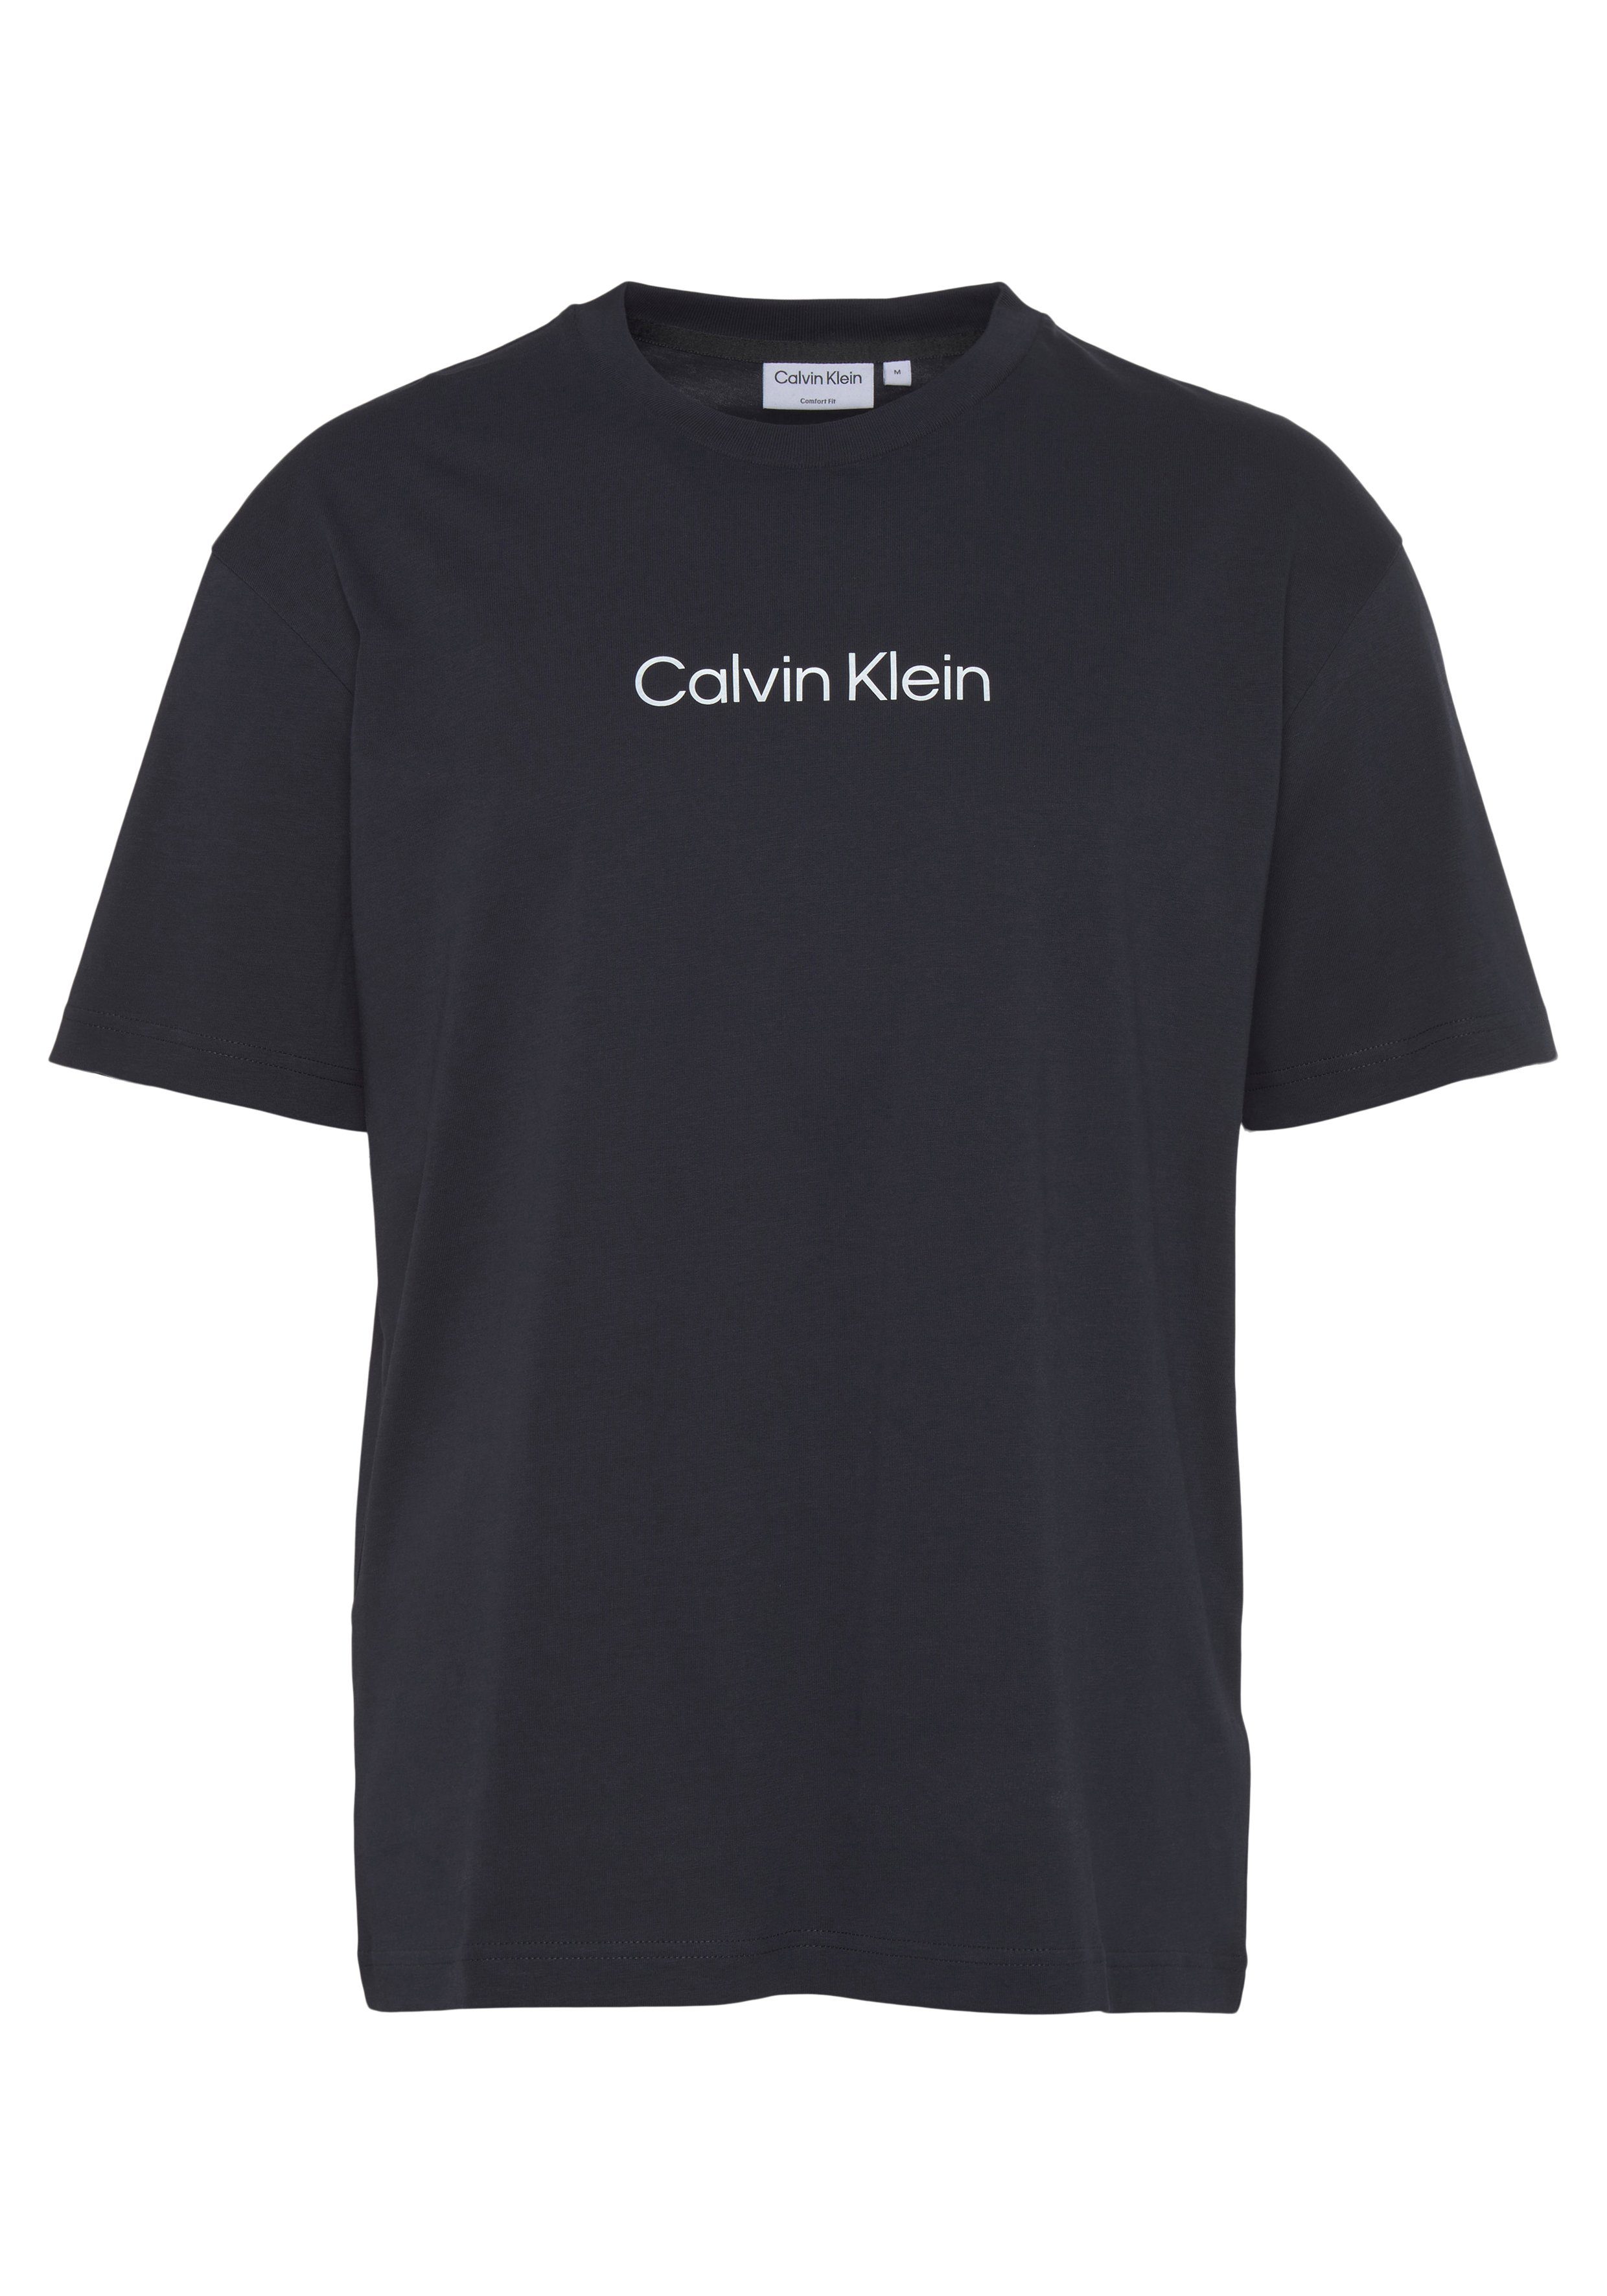 Calvin Klein T-Shirt HERO LOGO Markenlabel Night Sky COMFORT aufgedrucktem T-SHIRT mit